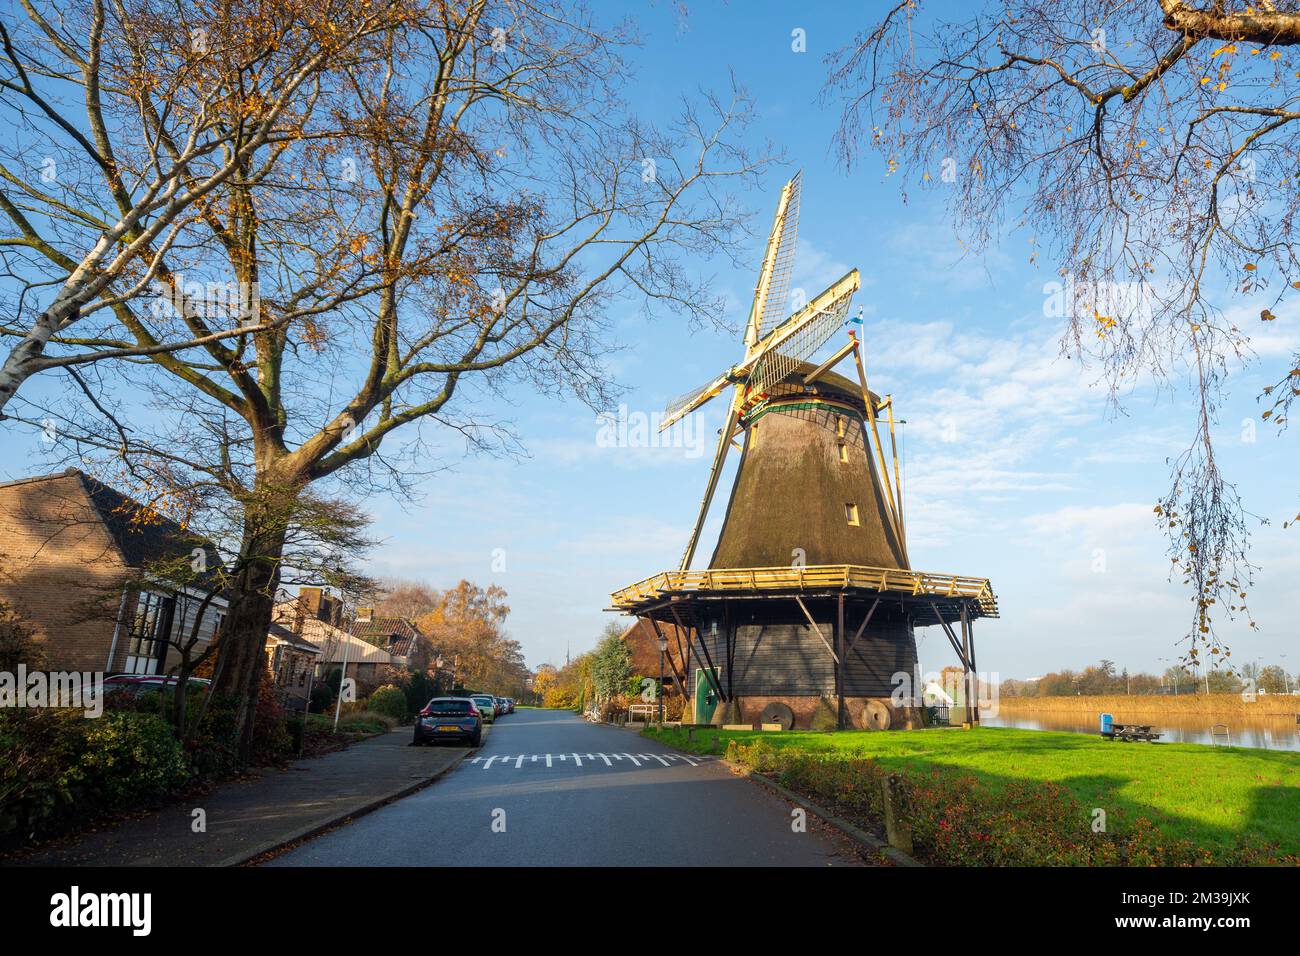 Molen De Vriendschap, traditionelle holländische Windmühle in der Kleinstadt Weesp, Niederlande Stockfoto